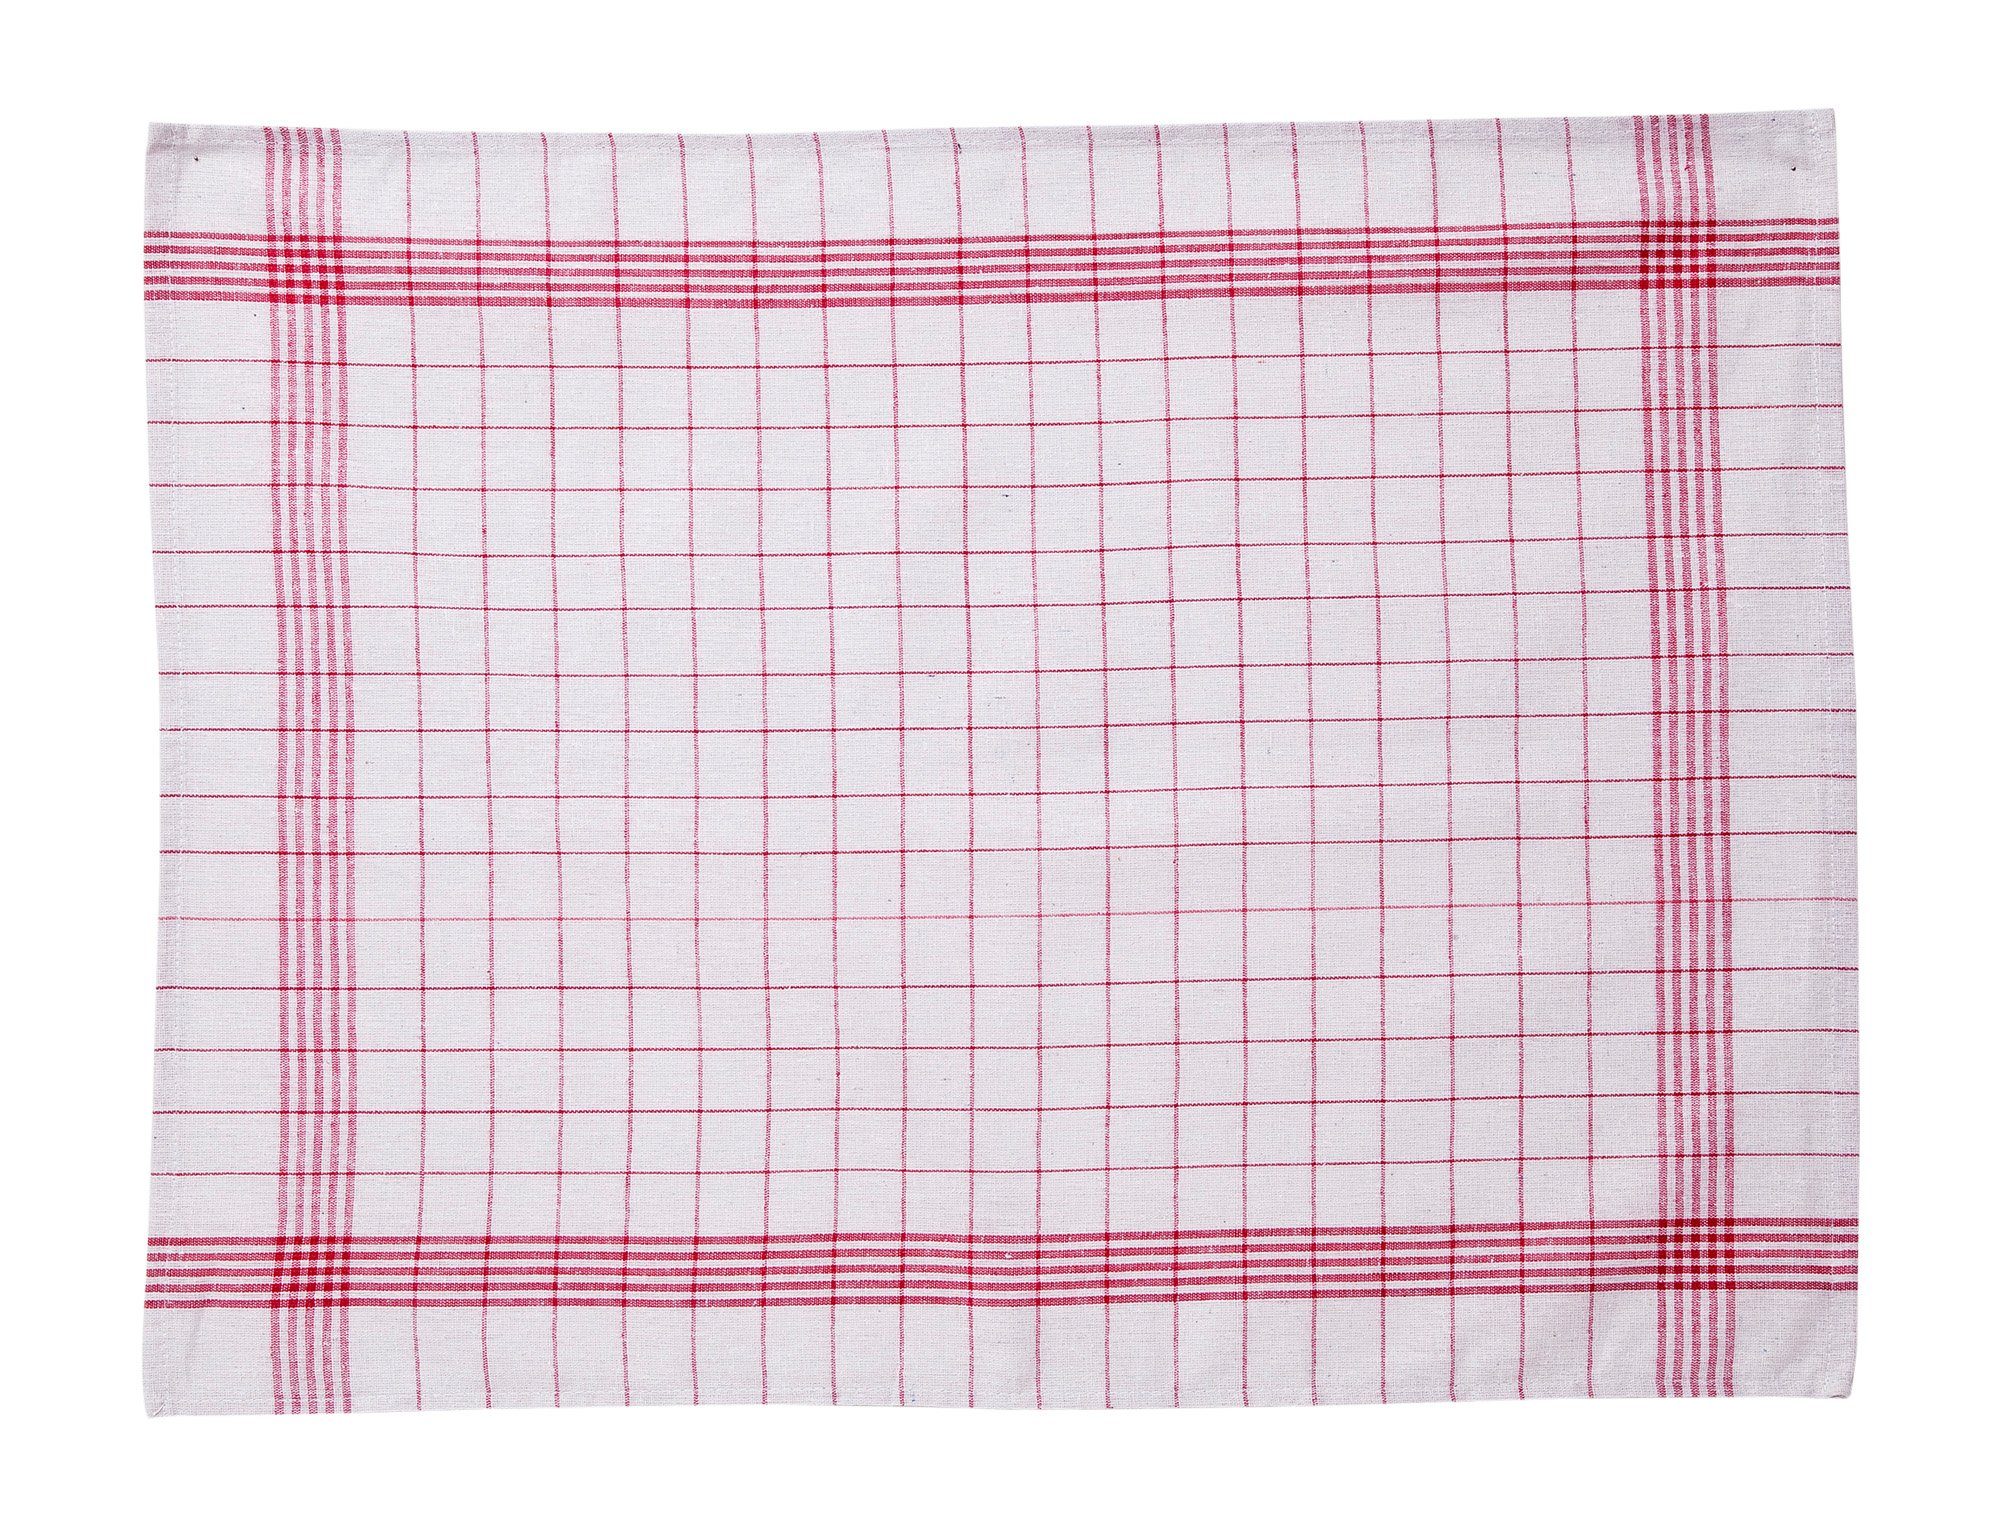 Hometex Premium Textiles Geschirrtuch Trockentuch, einsetzbares Vielfältig 10er 50x70 Blau/Rot-Weiß Allzweck-Tücher aus Premium-Qualität kariert Set 100% cm Baumwolle, 